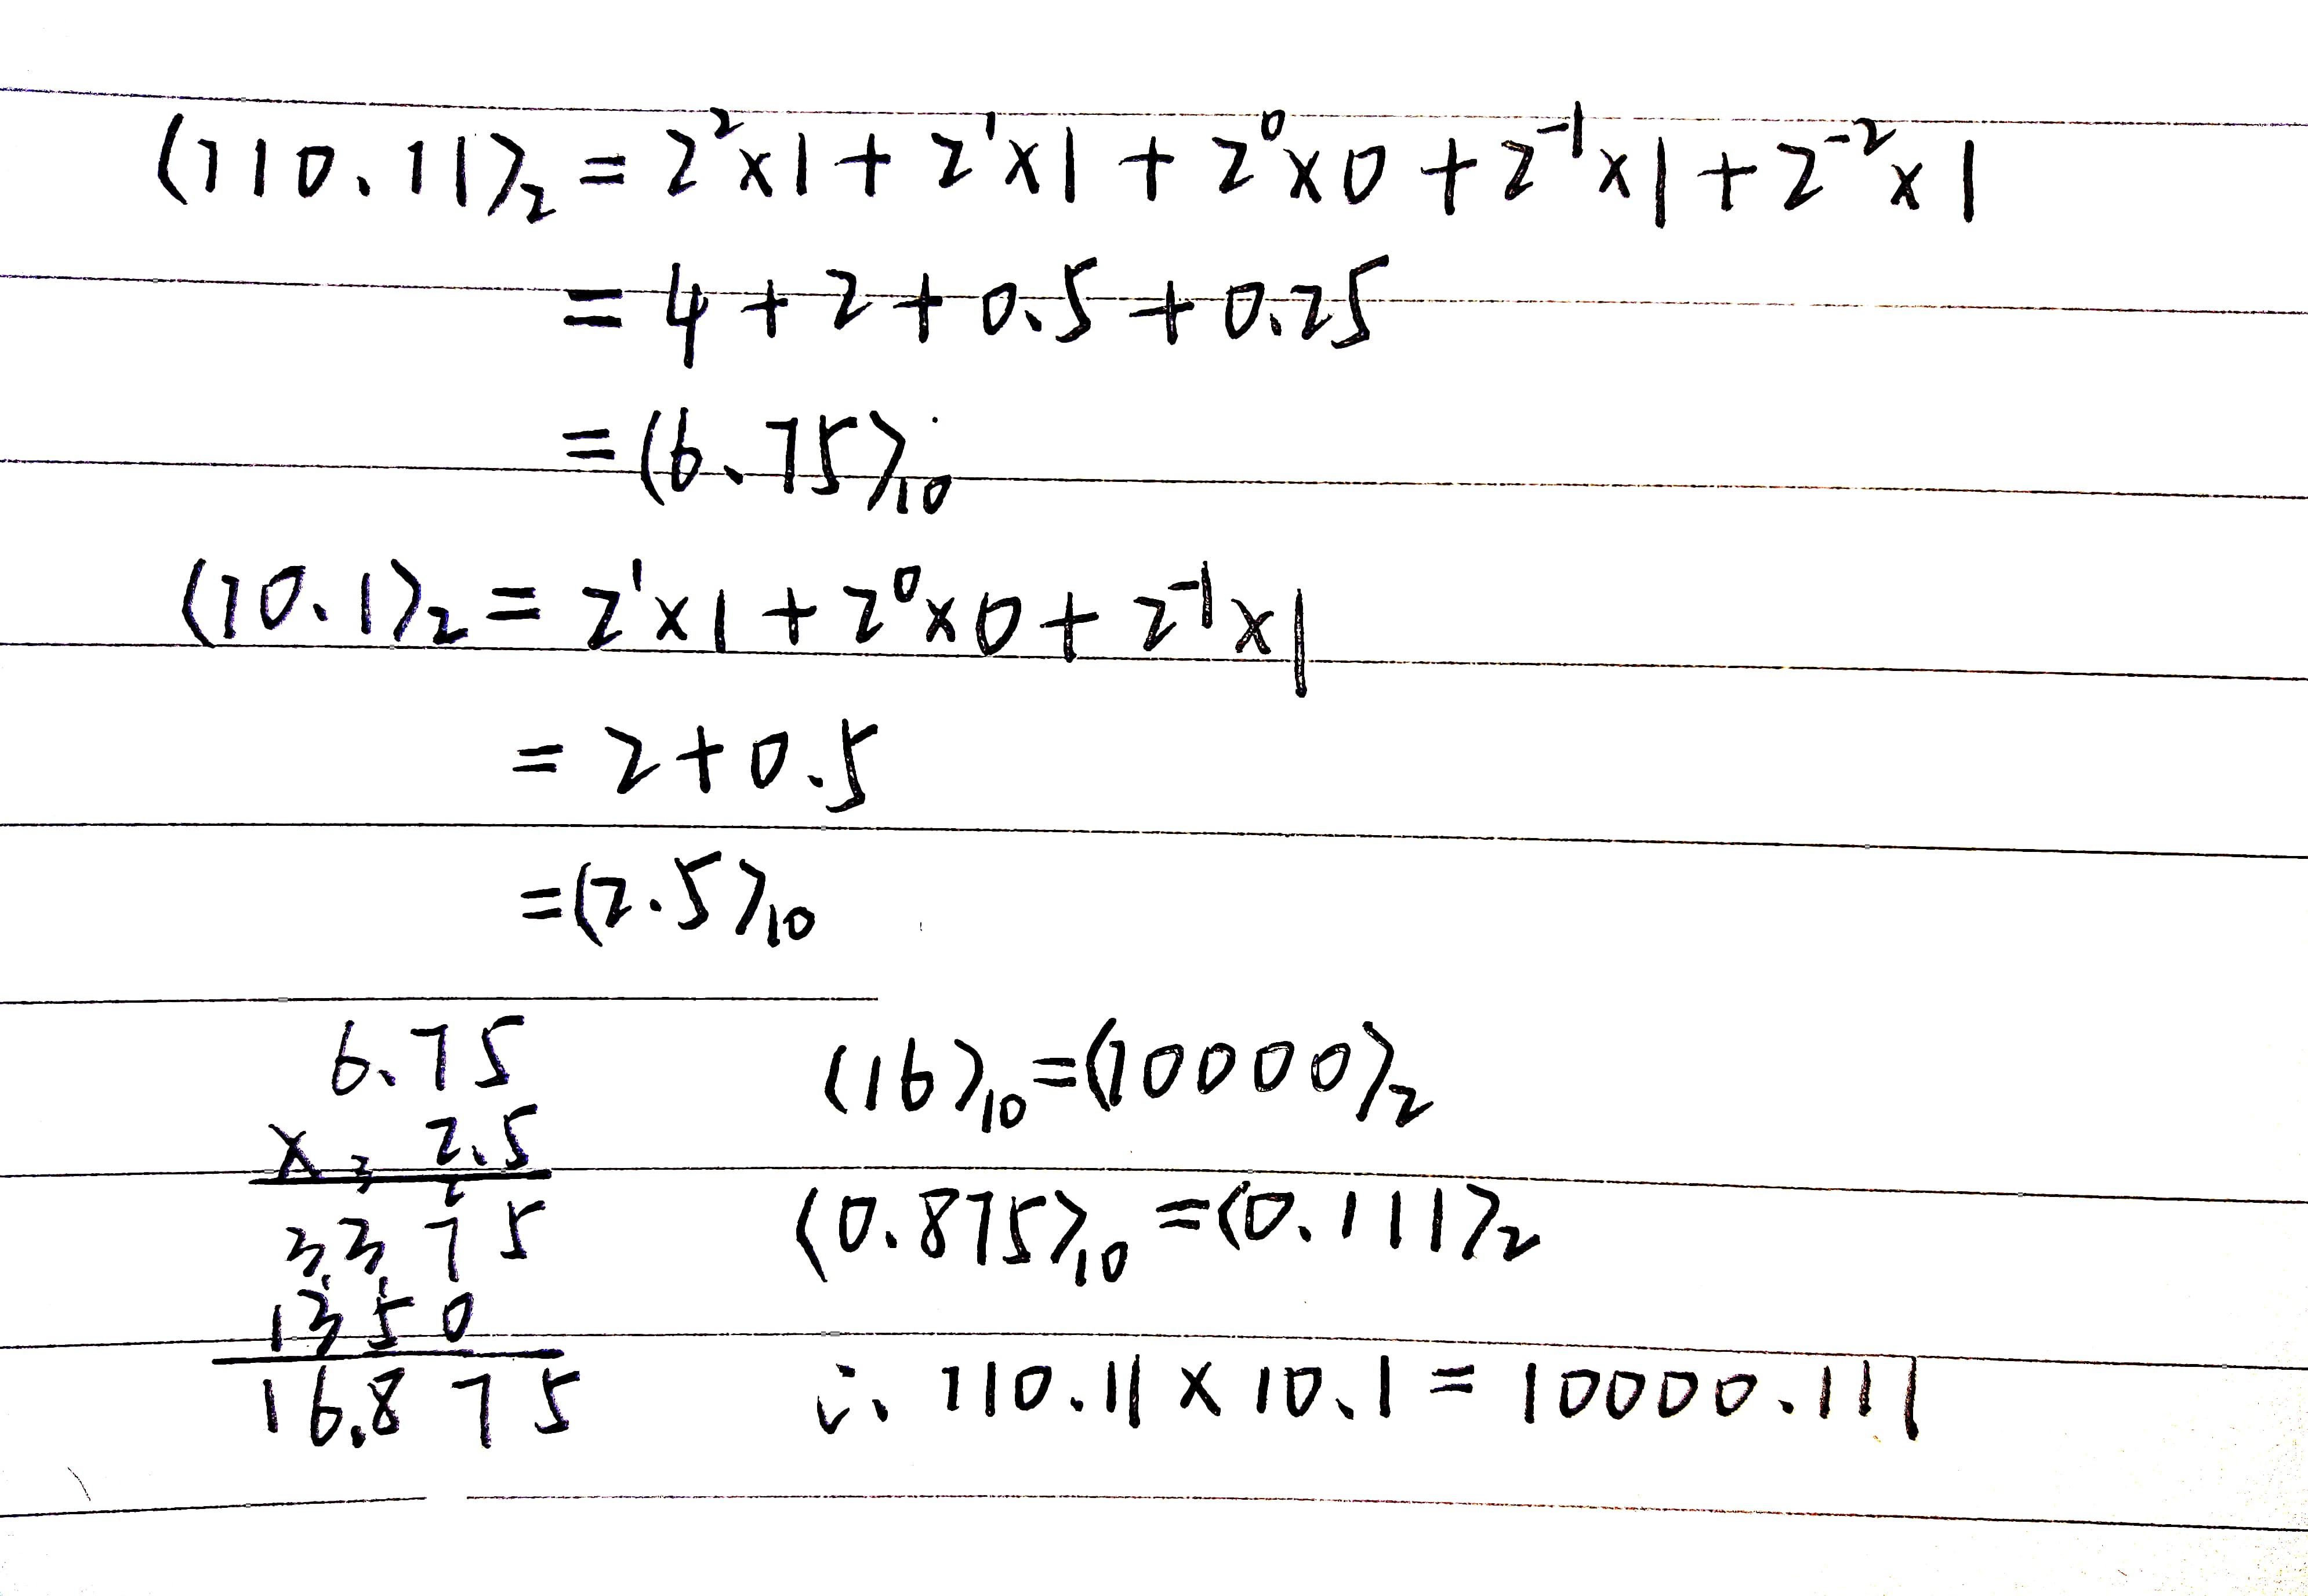 二进制10.1×110.11怎么算?